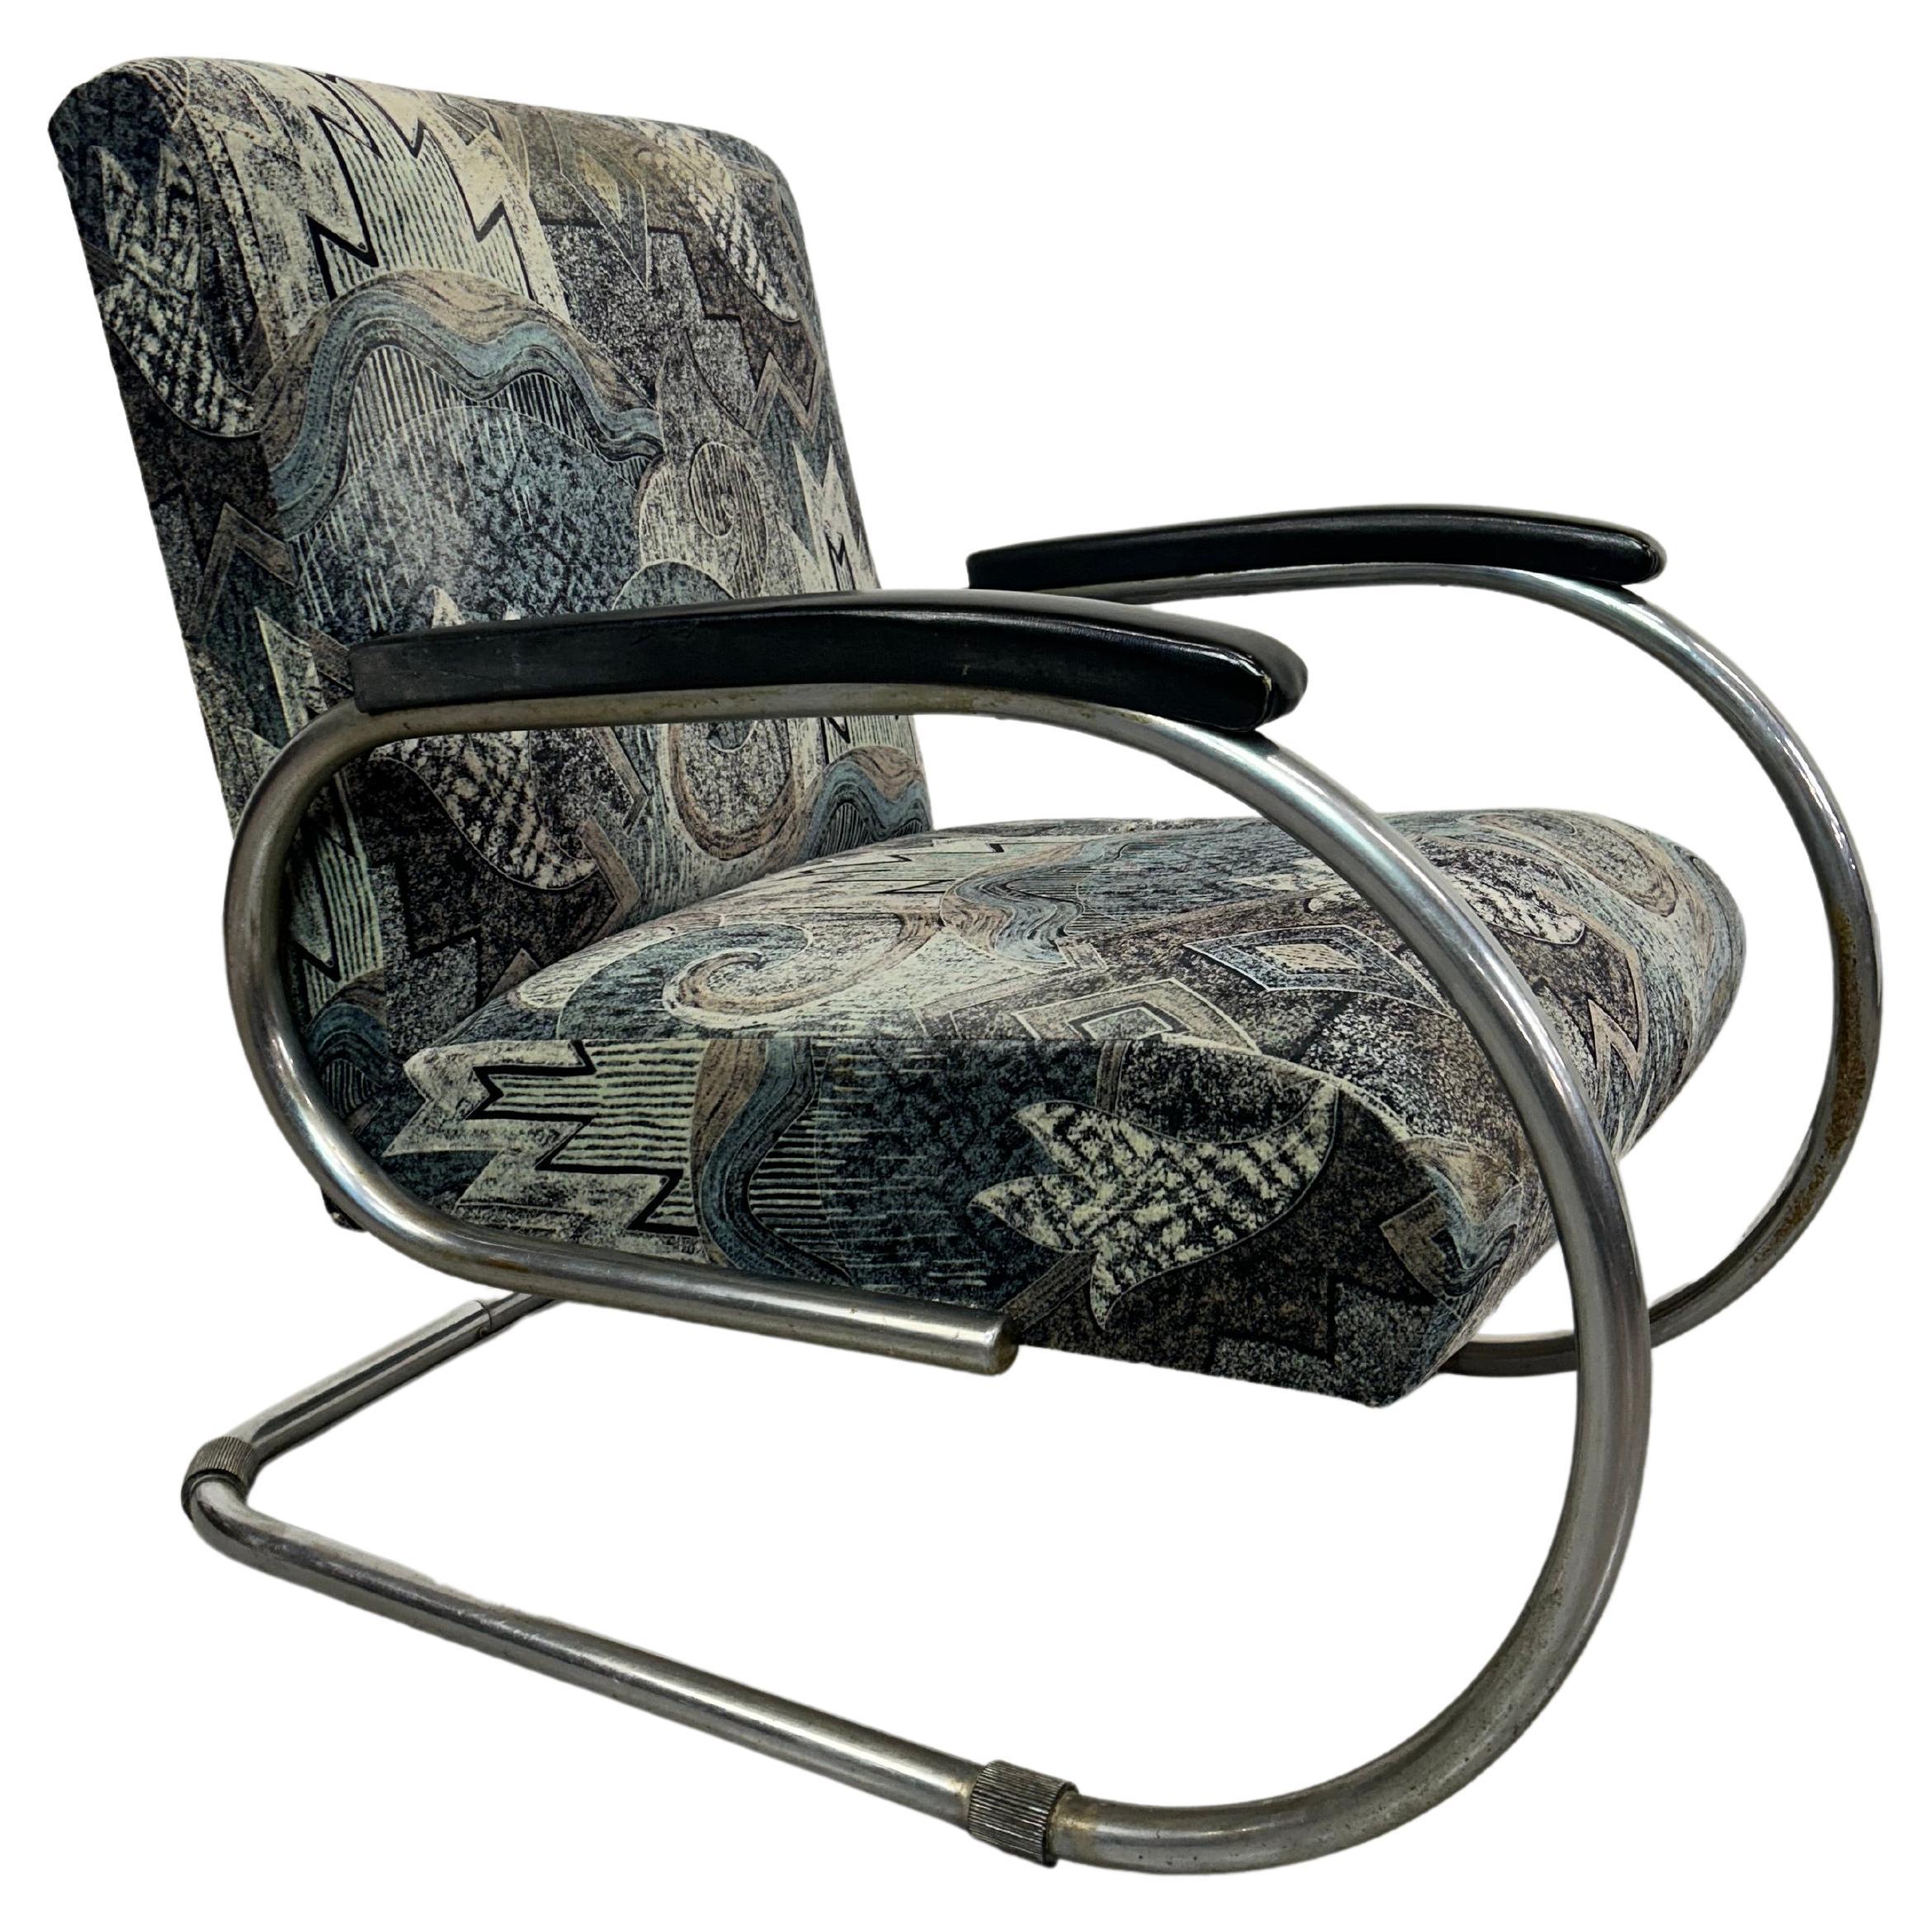 Tubular steel armchair by Tubax For Sale